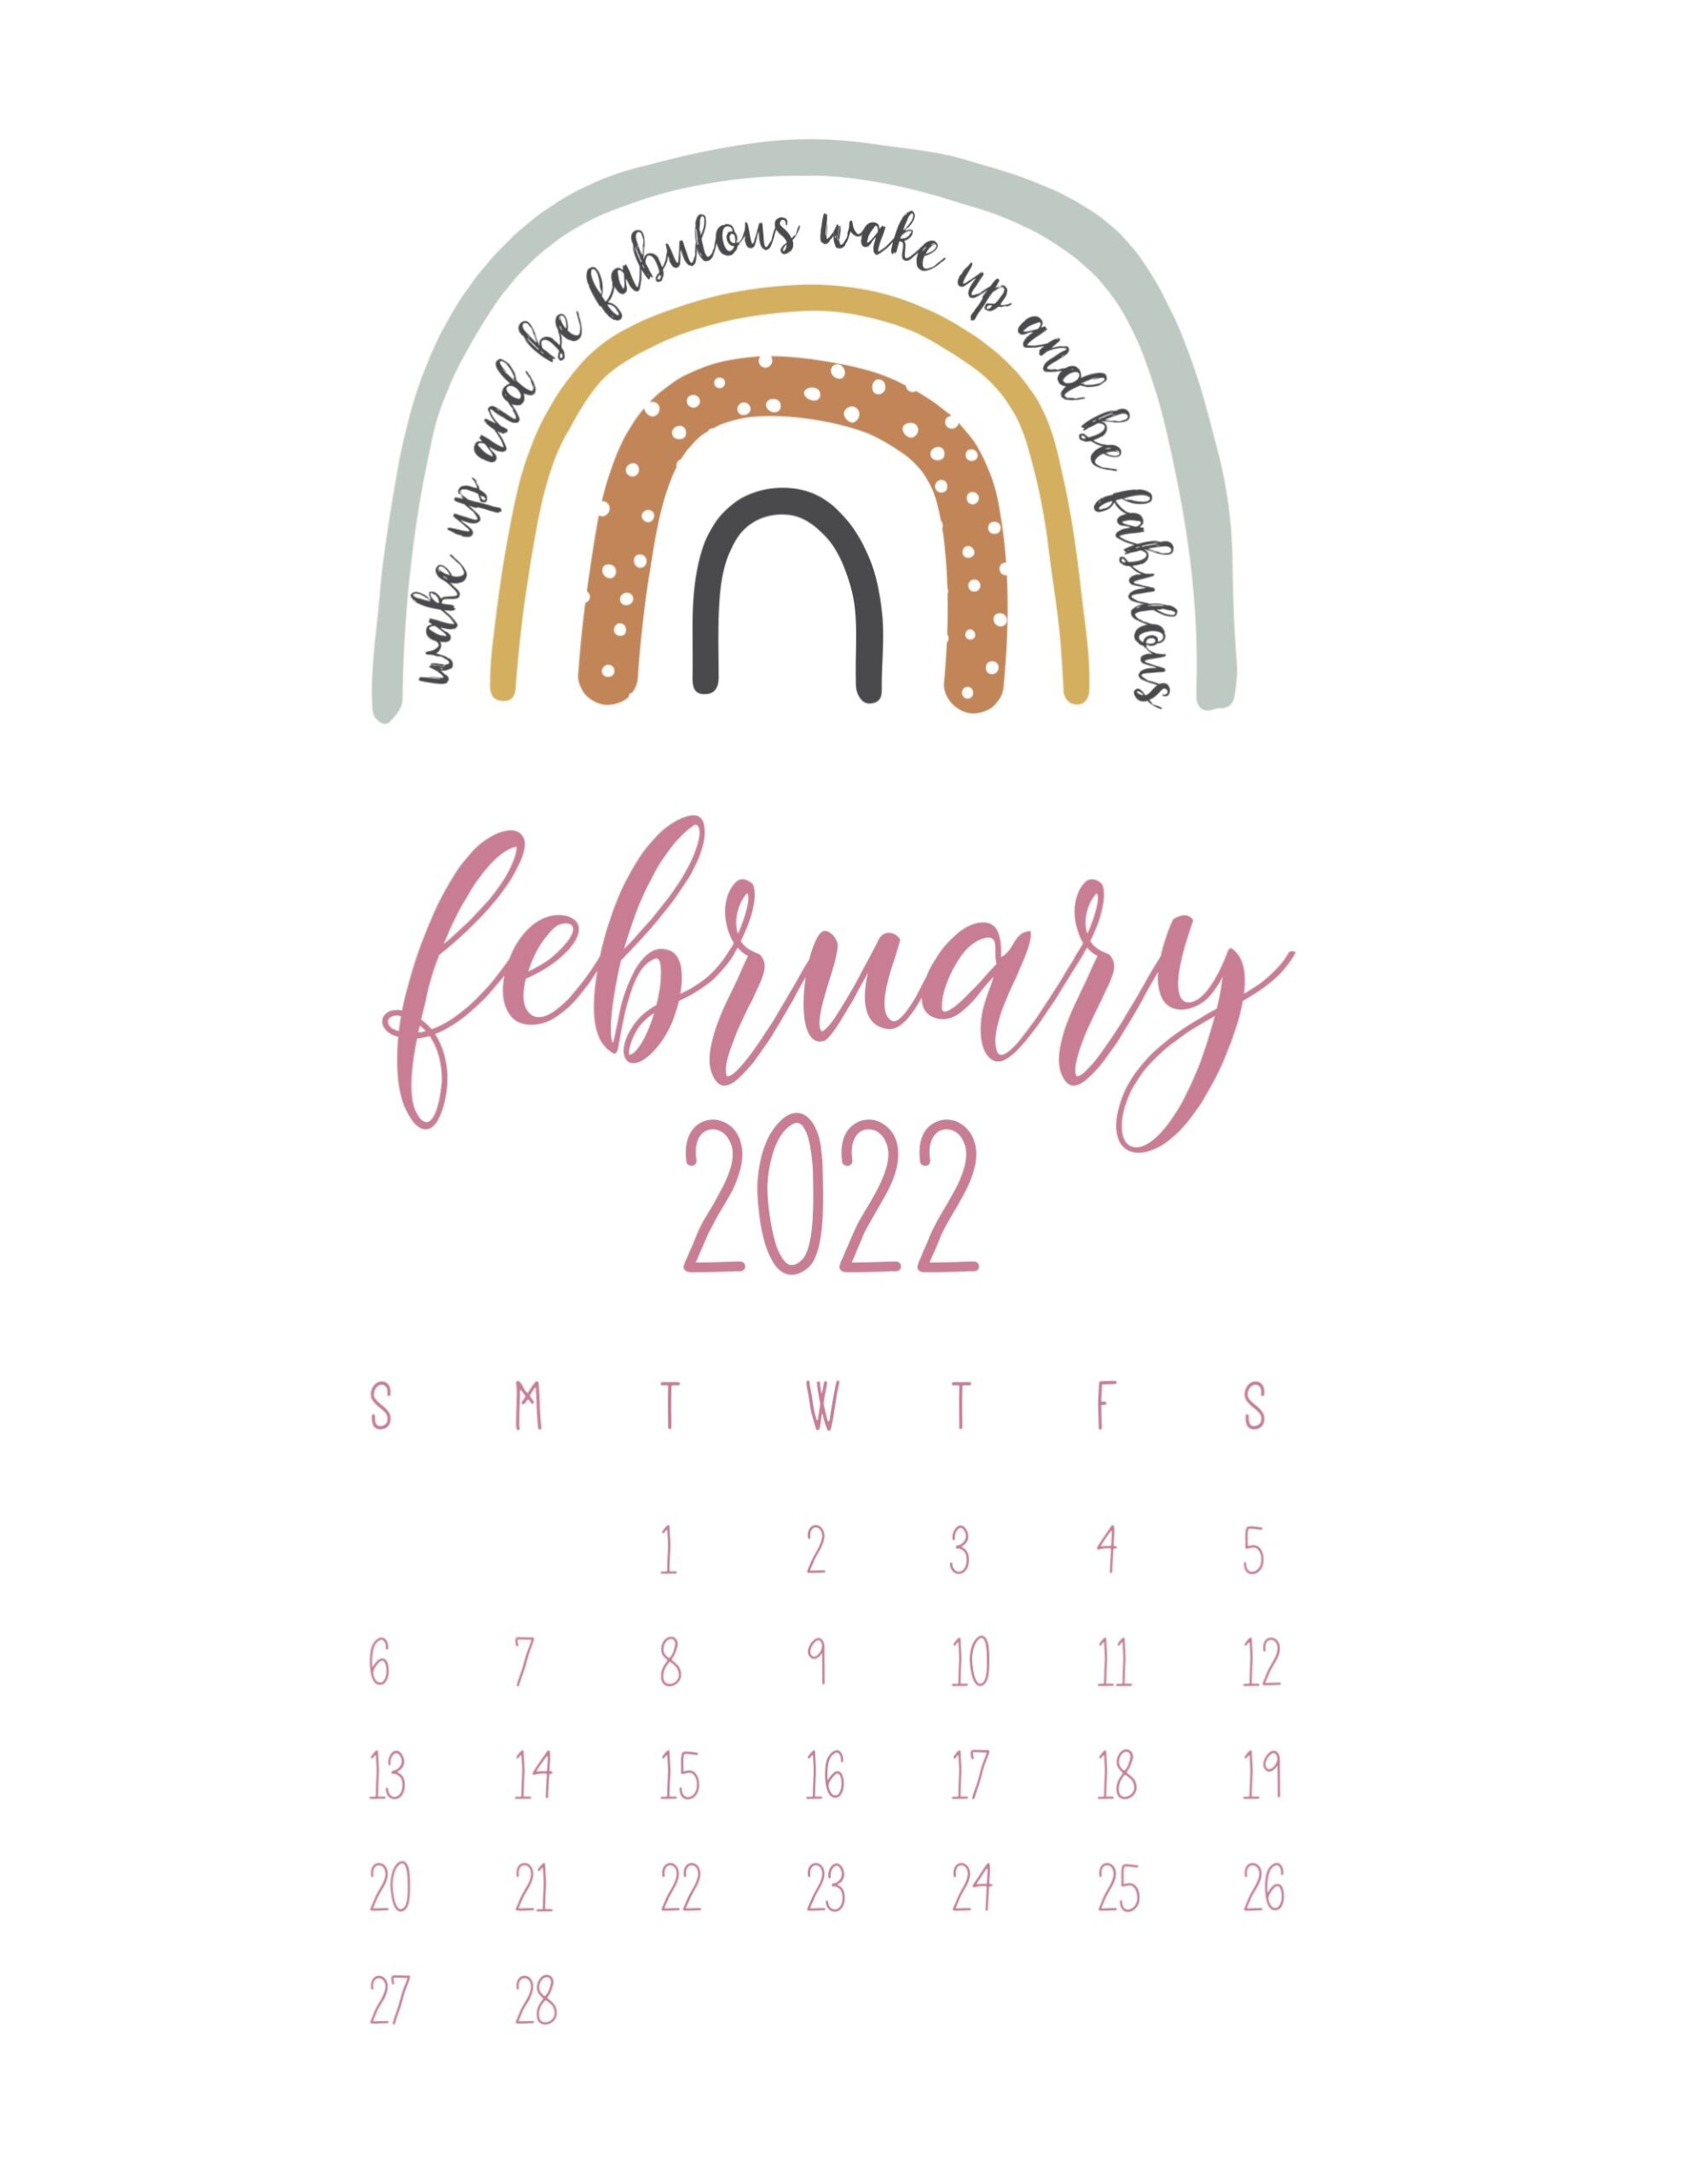 calendario 2022 arco iris fevereiro